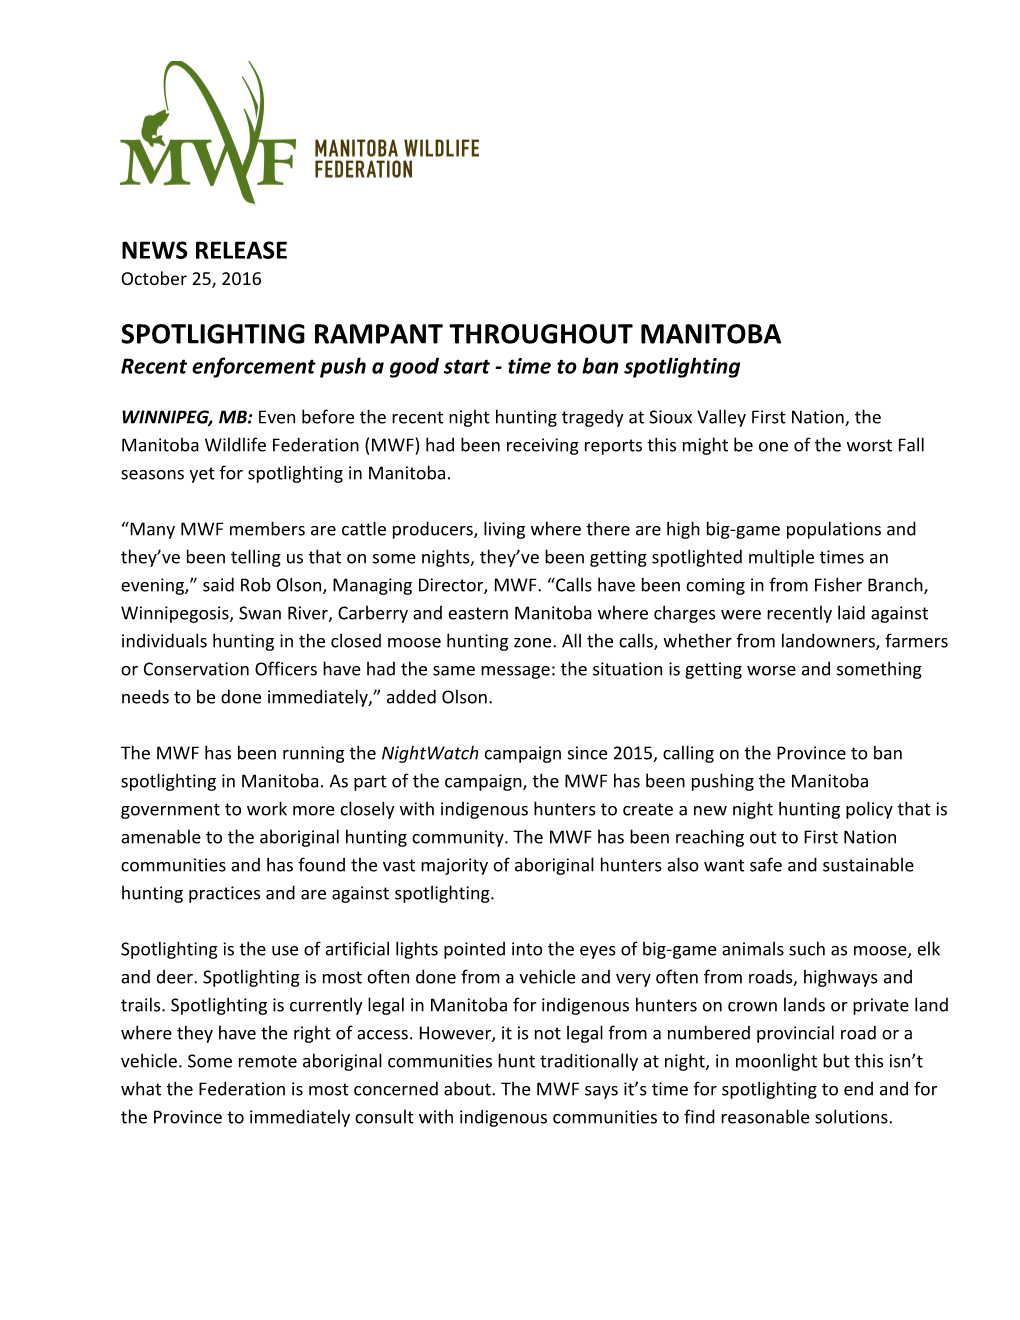 Spotlighting Rampant Throughout Manitoba